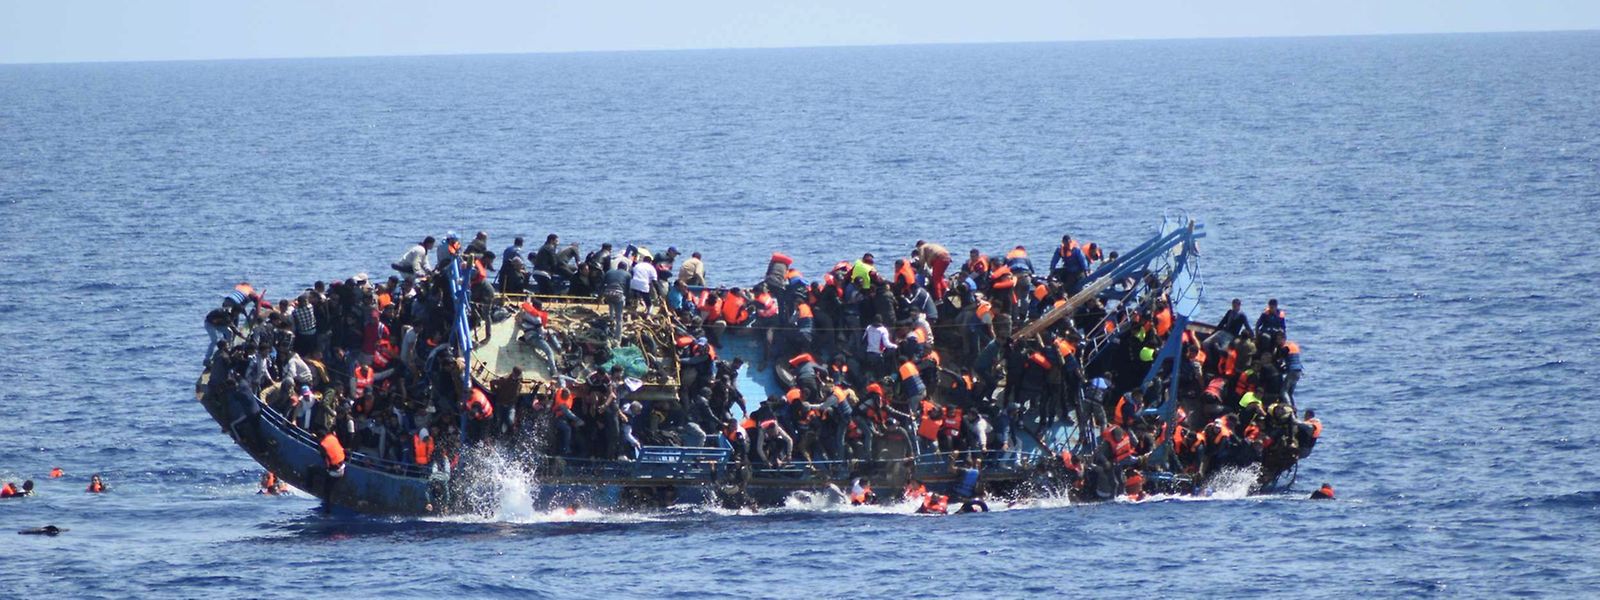 Ähnliche Szenen Ende Mai: Damals ist ein Schiff vor der Küste Lybiens gekentert.